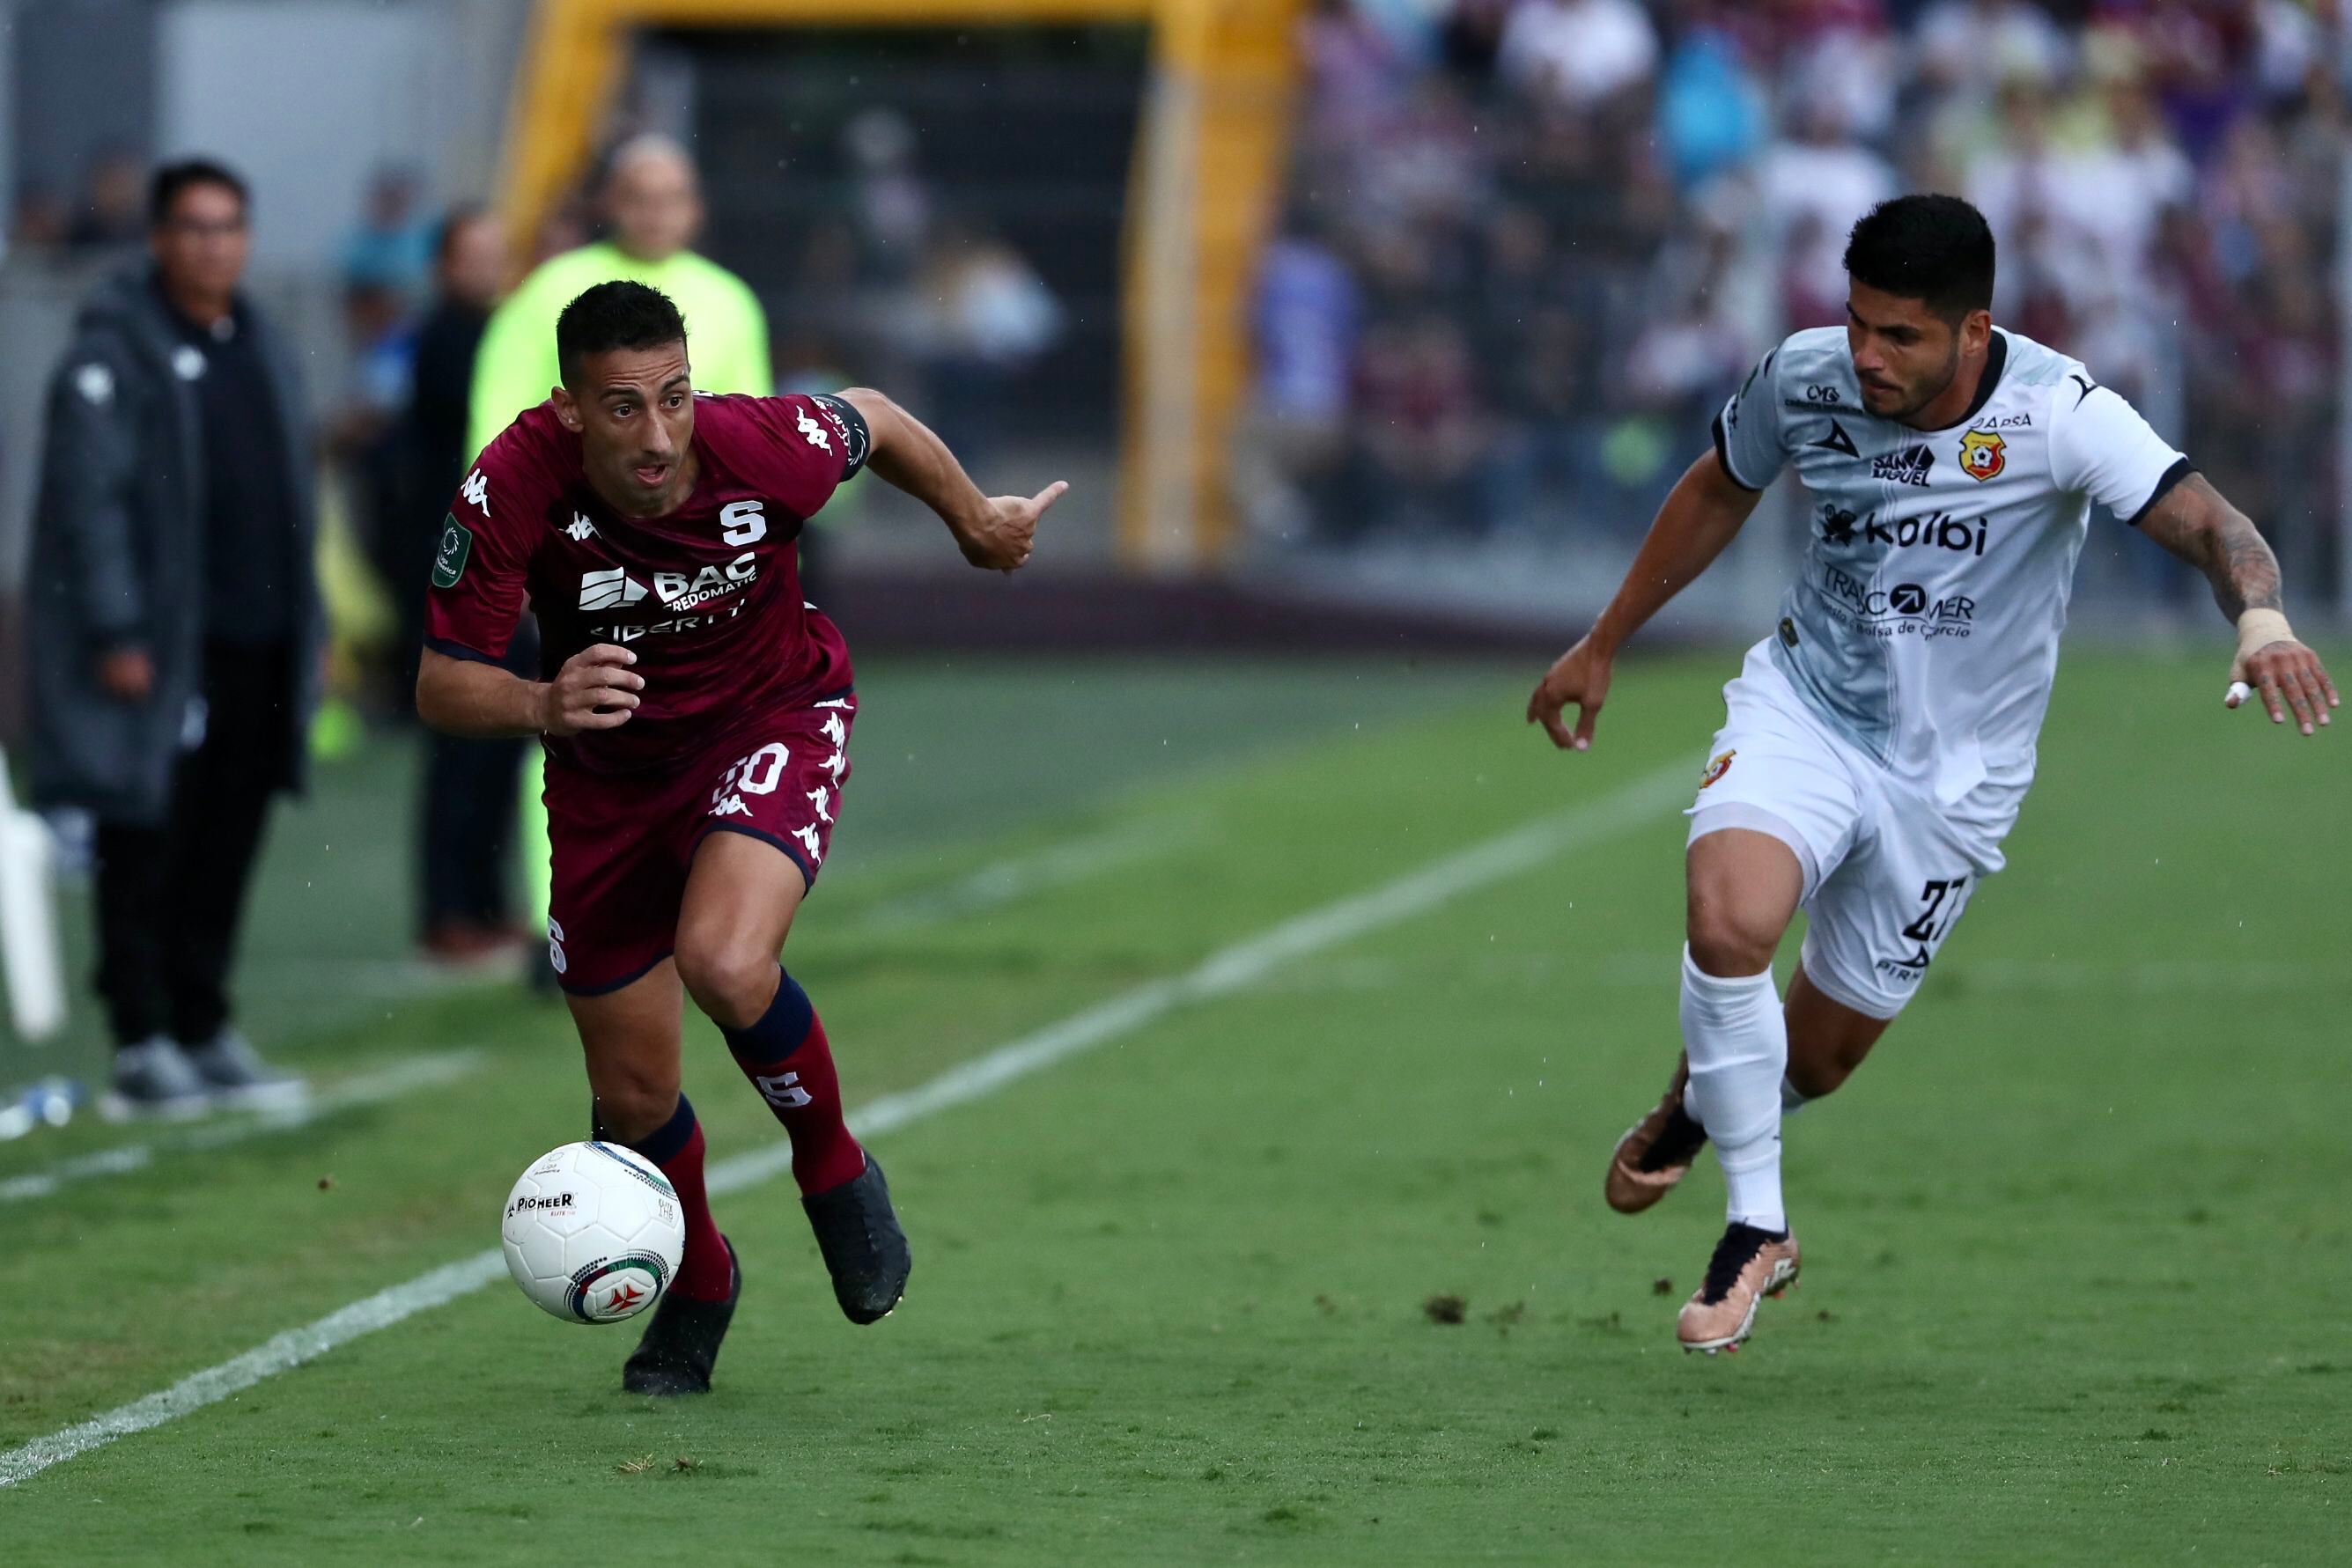 Saprissa derrotó a Herediano 2-0 la última vez que se enfrentaron, pero en el choque anterior, los florenses golearon 4-1. En la acción, Mariano Torres buscó superar a Gabriel Leiva.